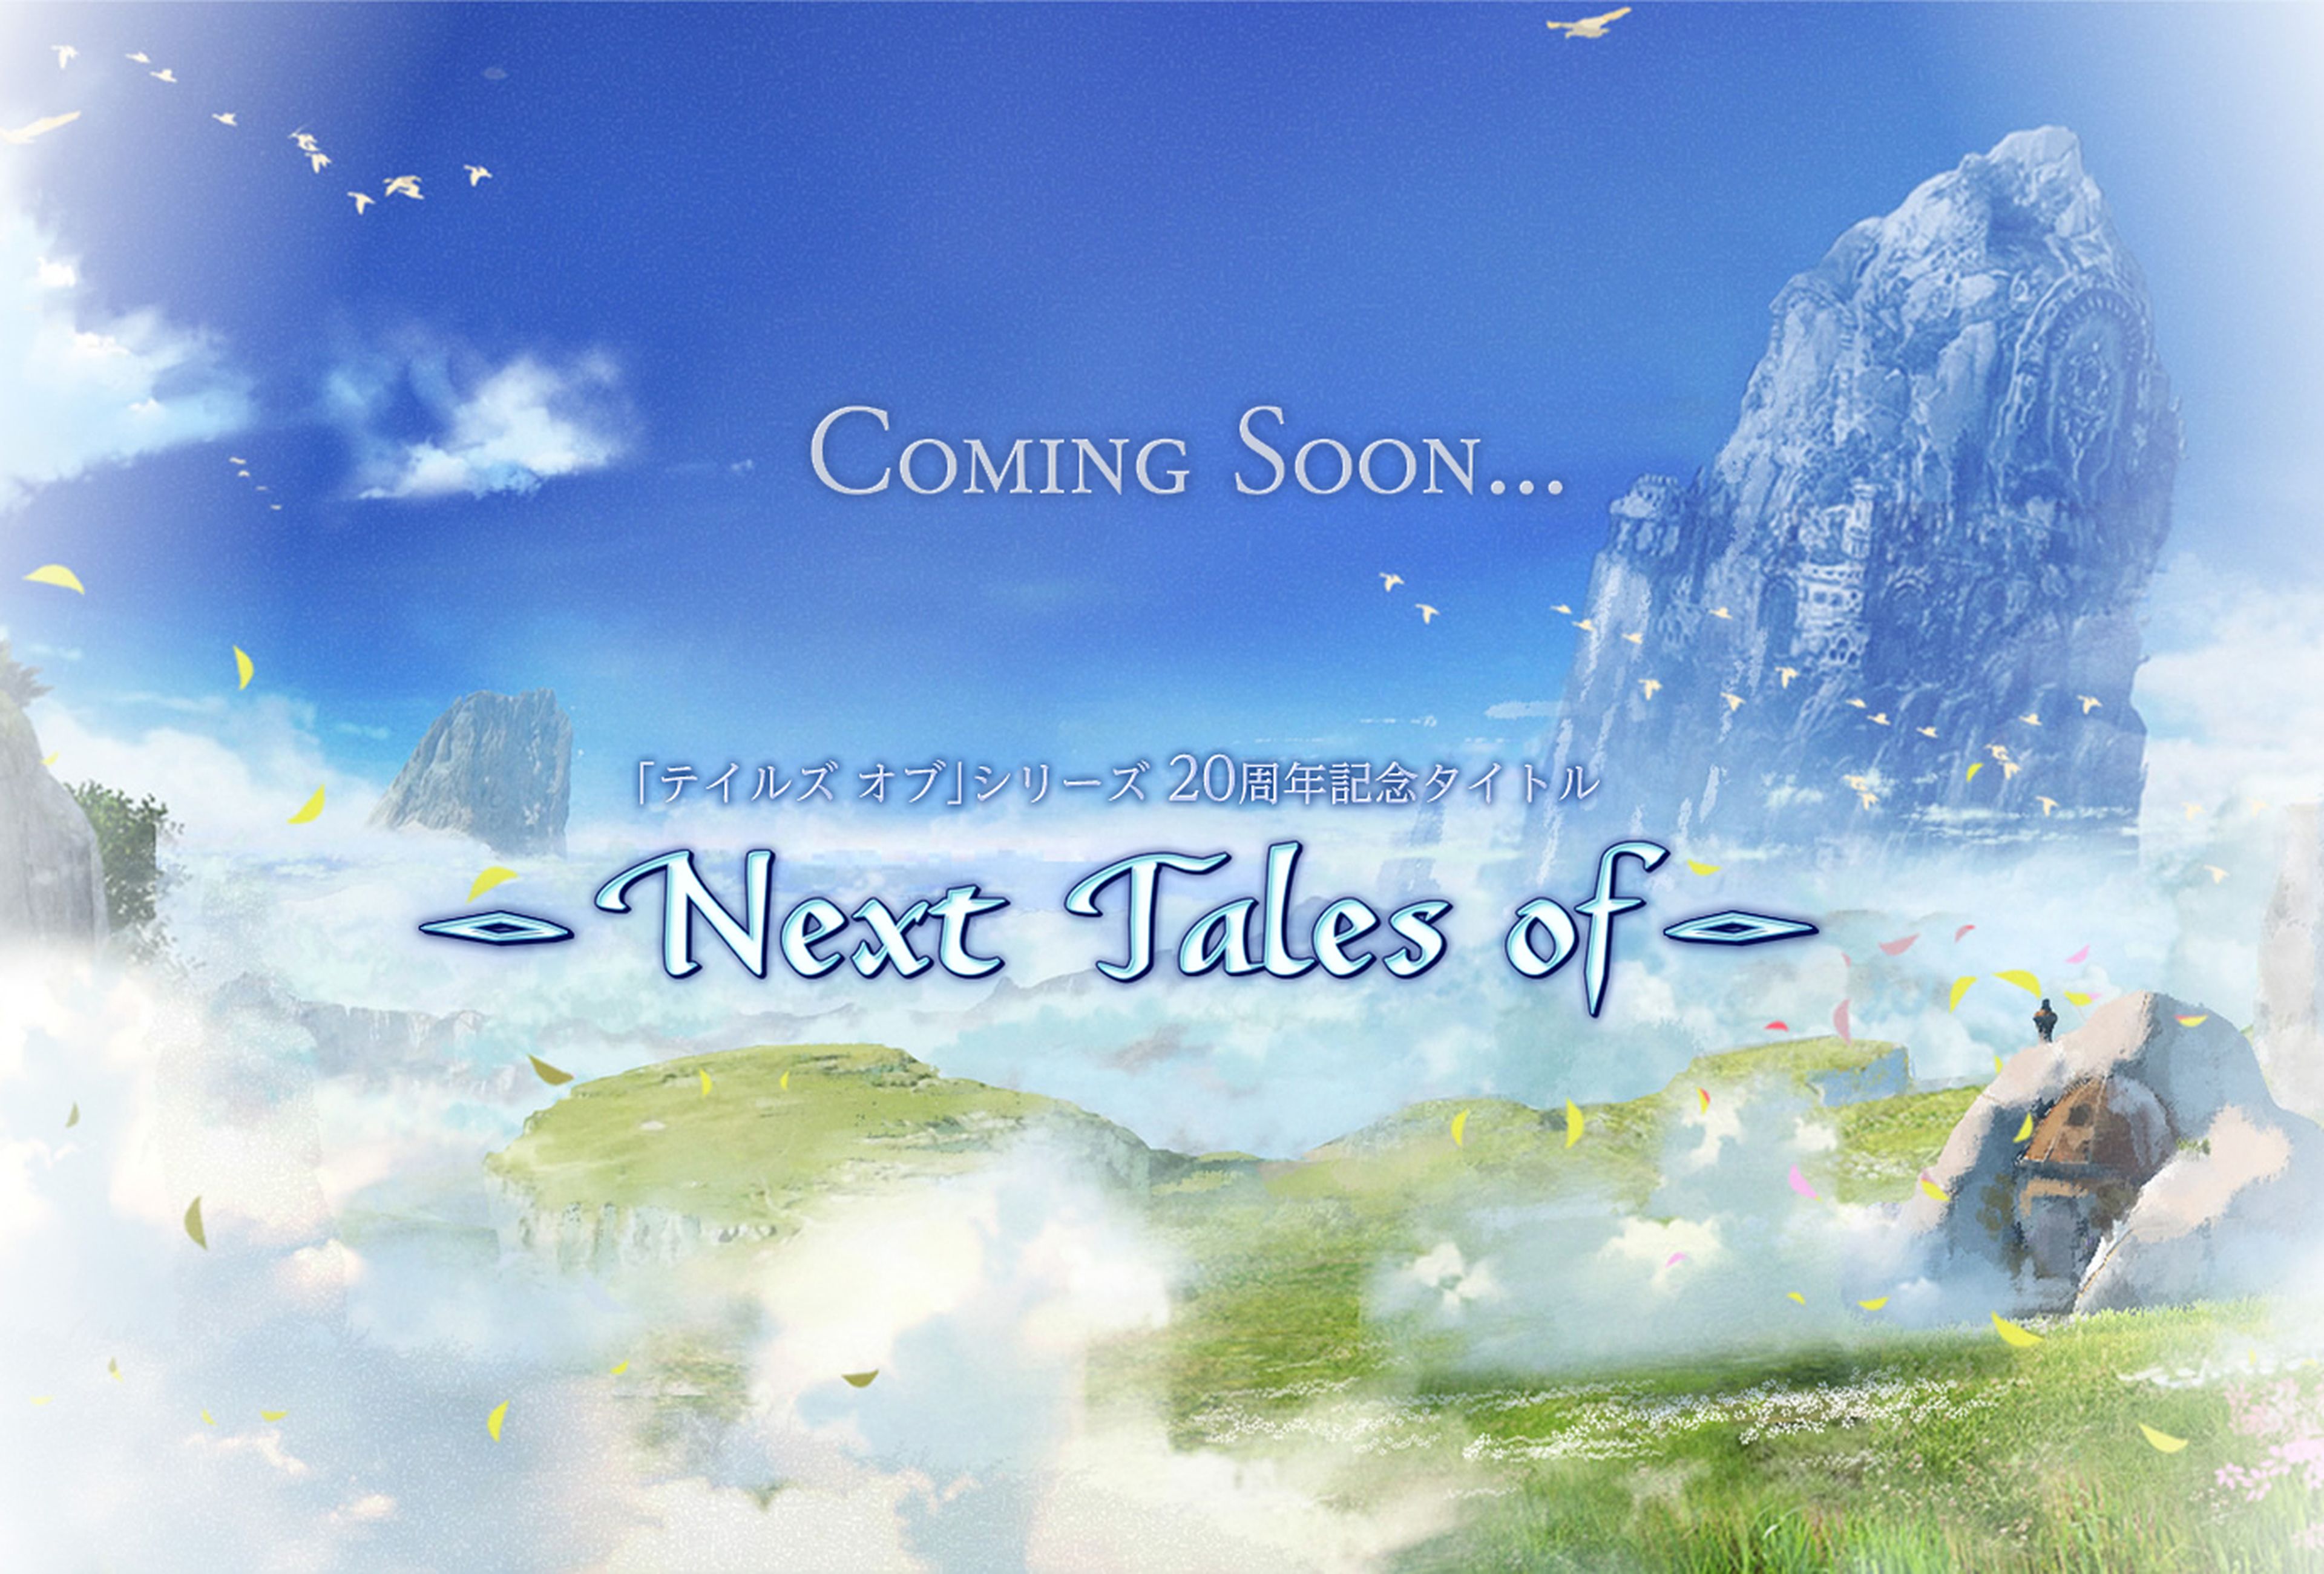 El nuevo Tales of se presenta mañana